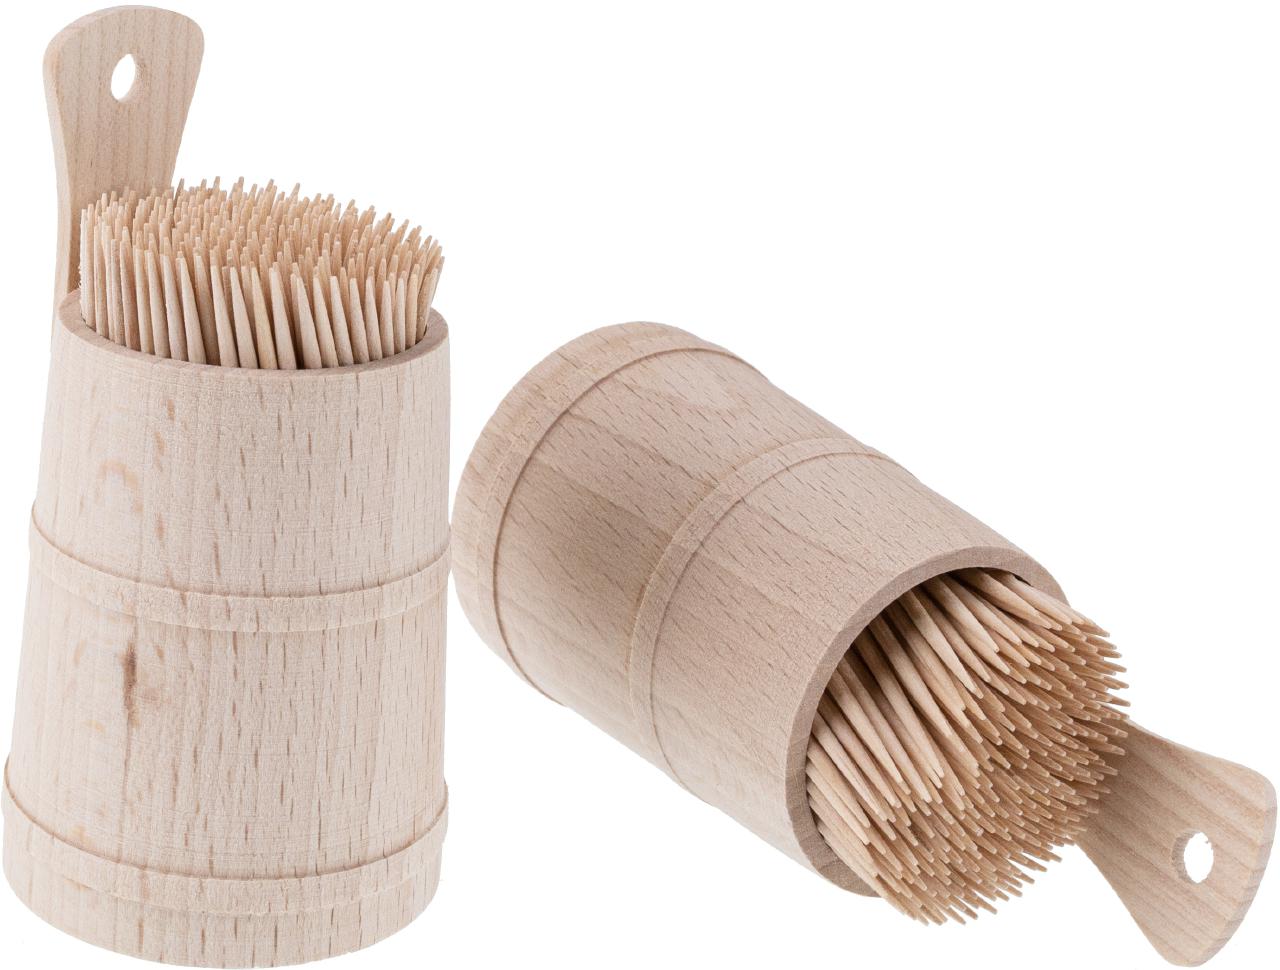 Praktisches Zahnstocherfässchen aus Buchenholz inklusive Zahnstocher - handliche Größe (10 x 5,5 cm)